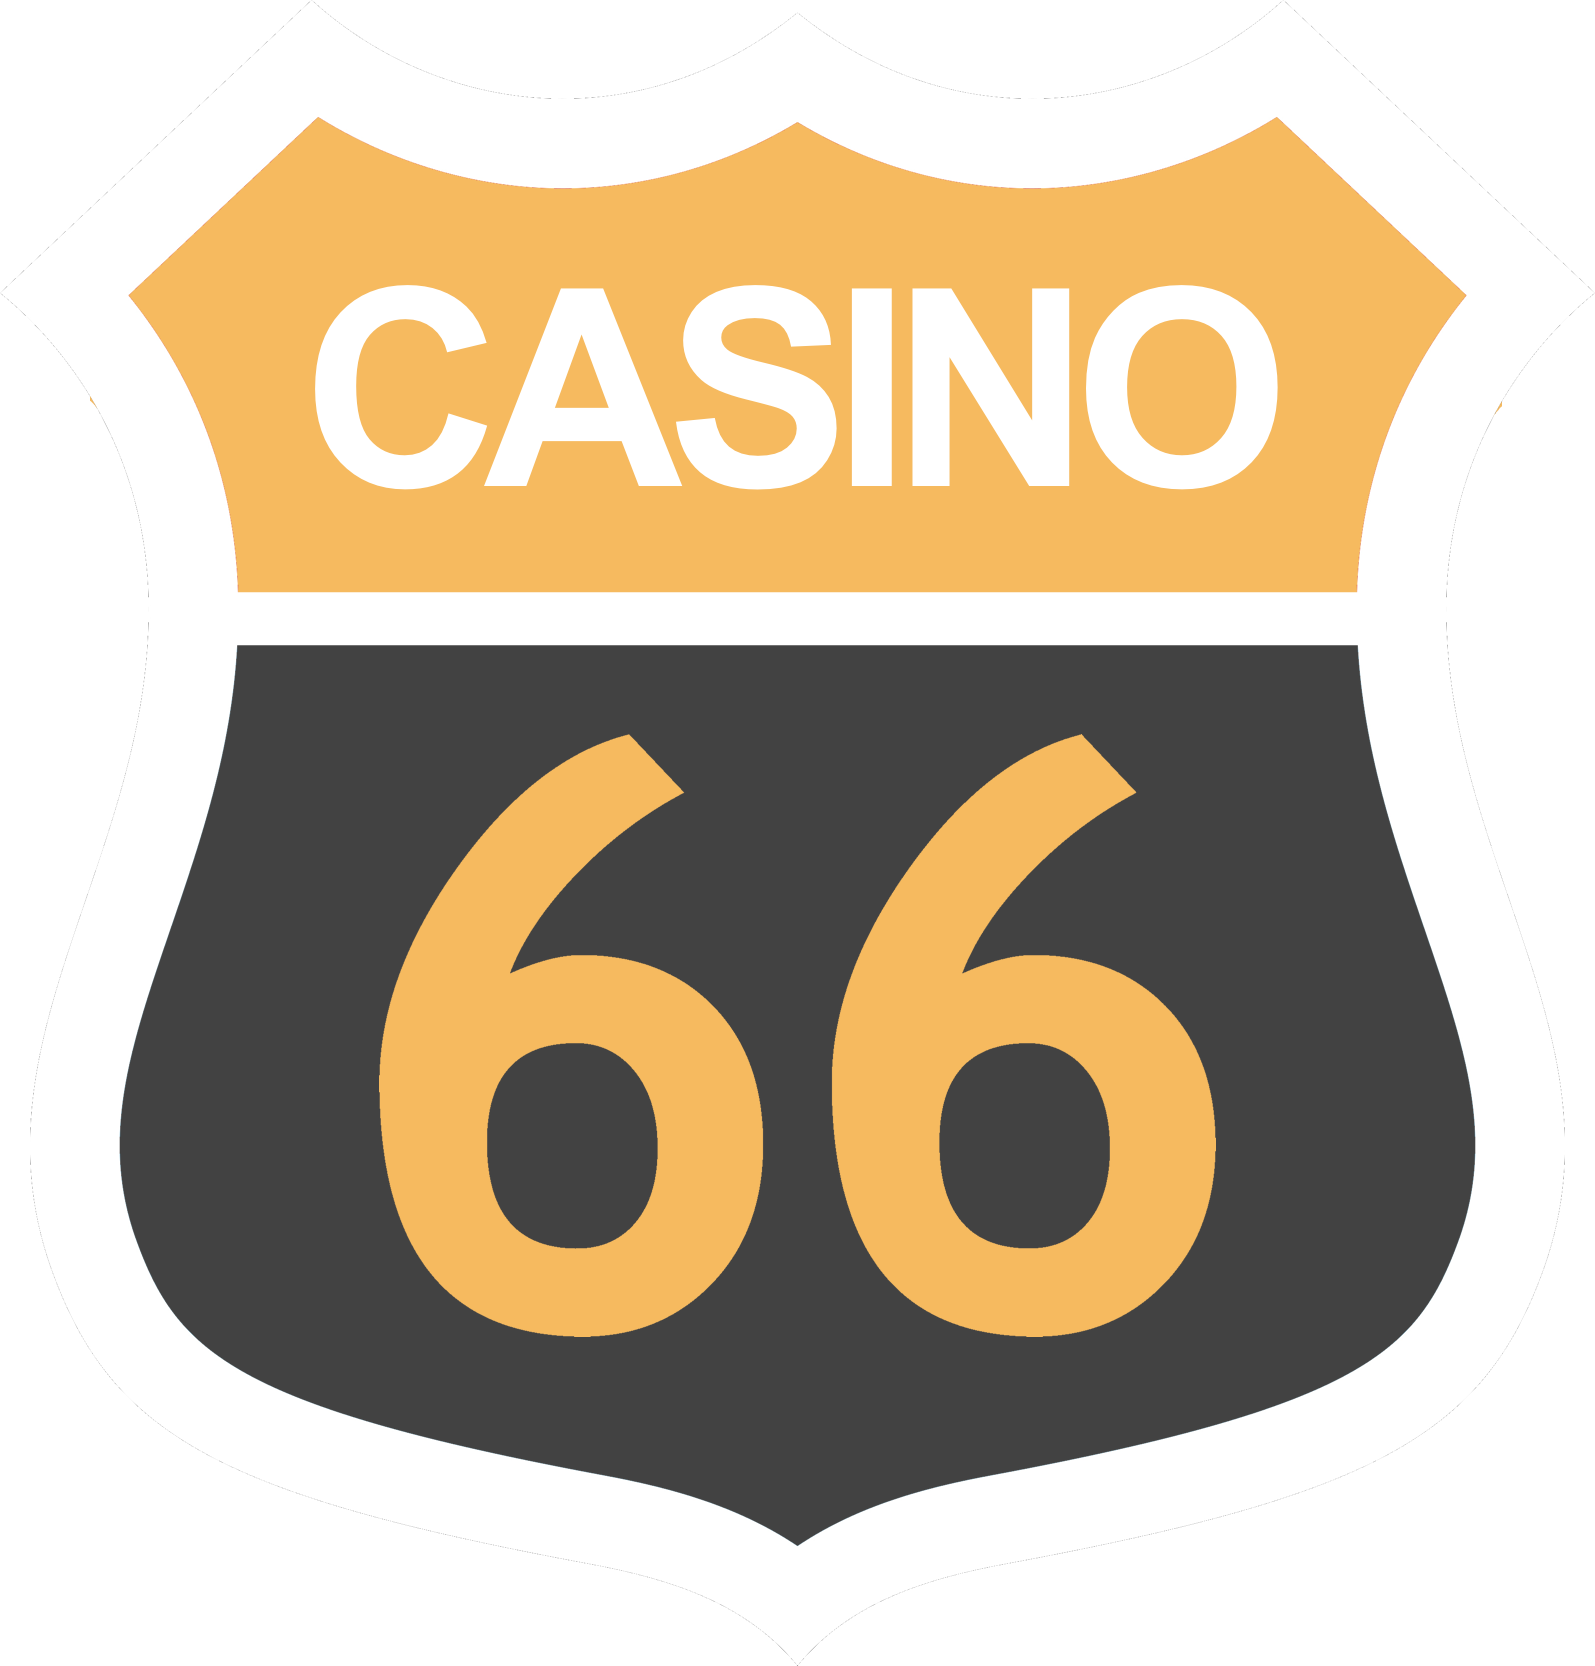 Casino 66